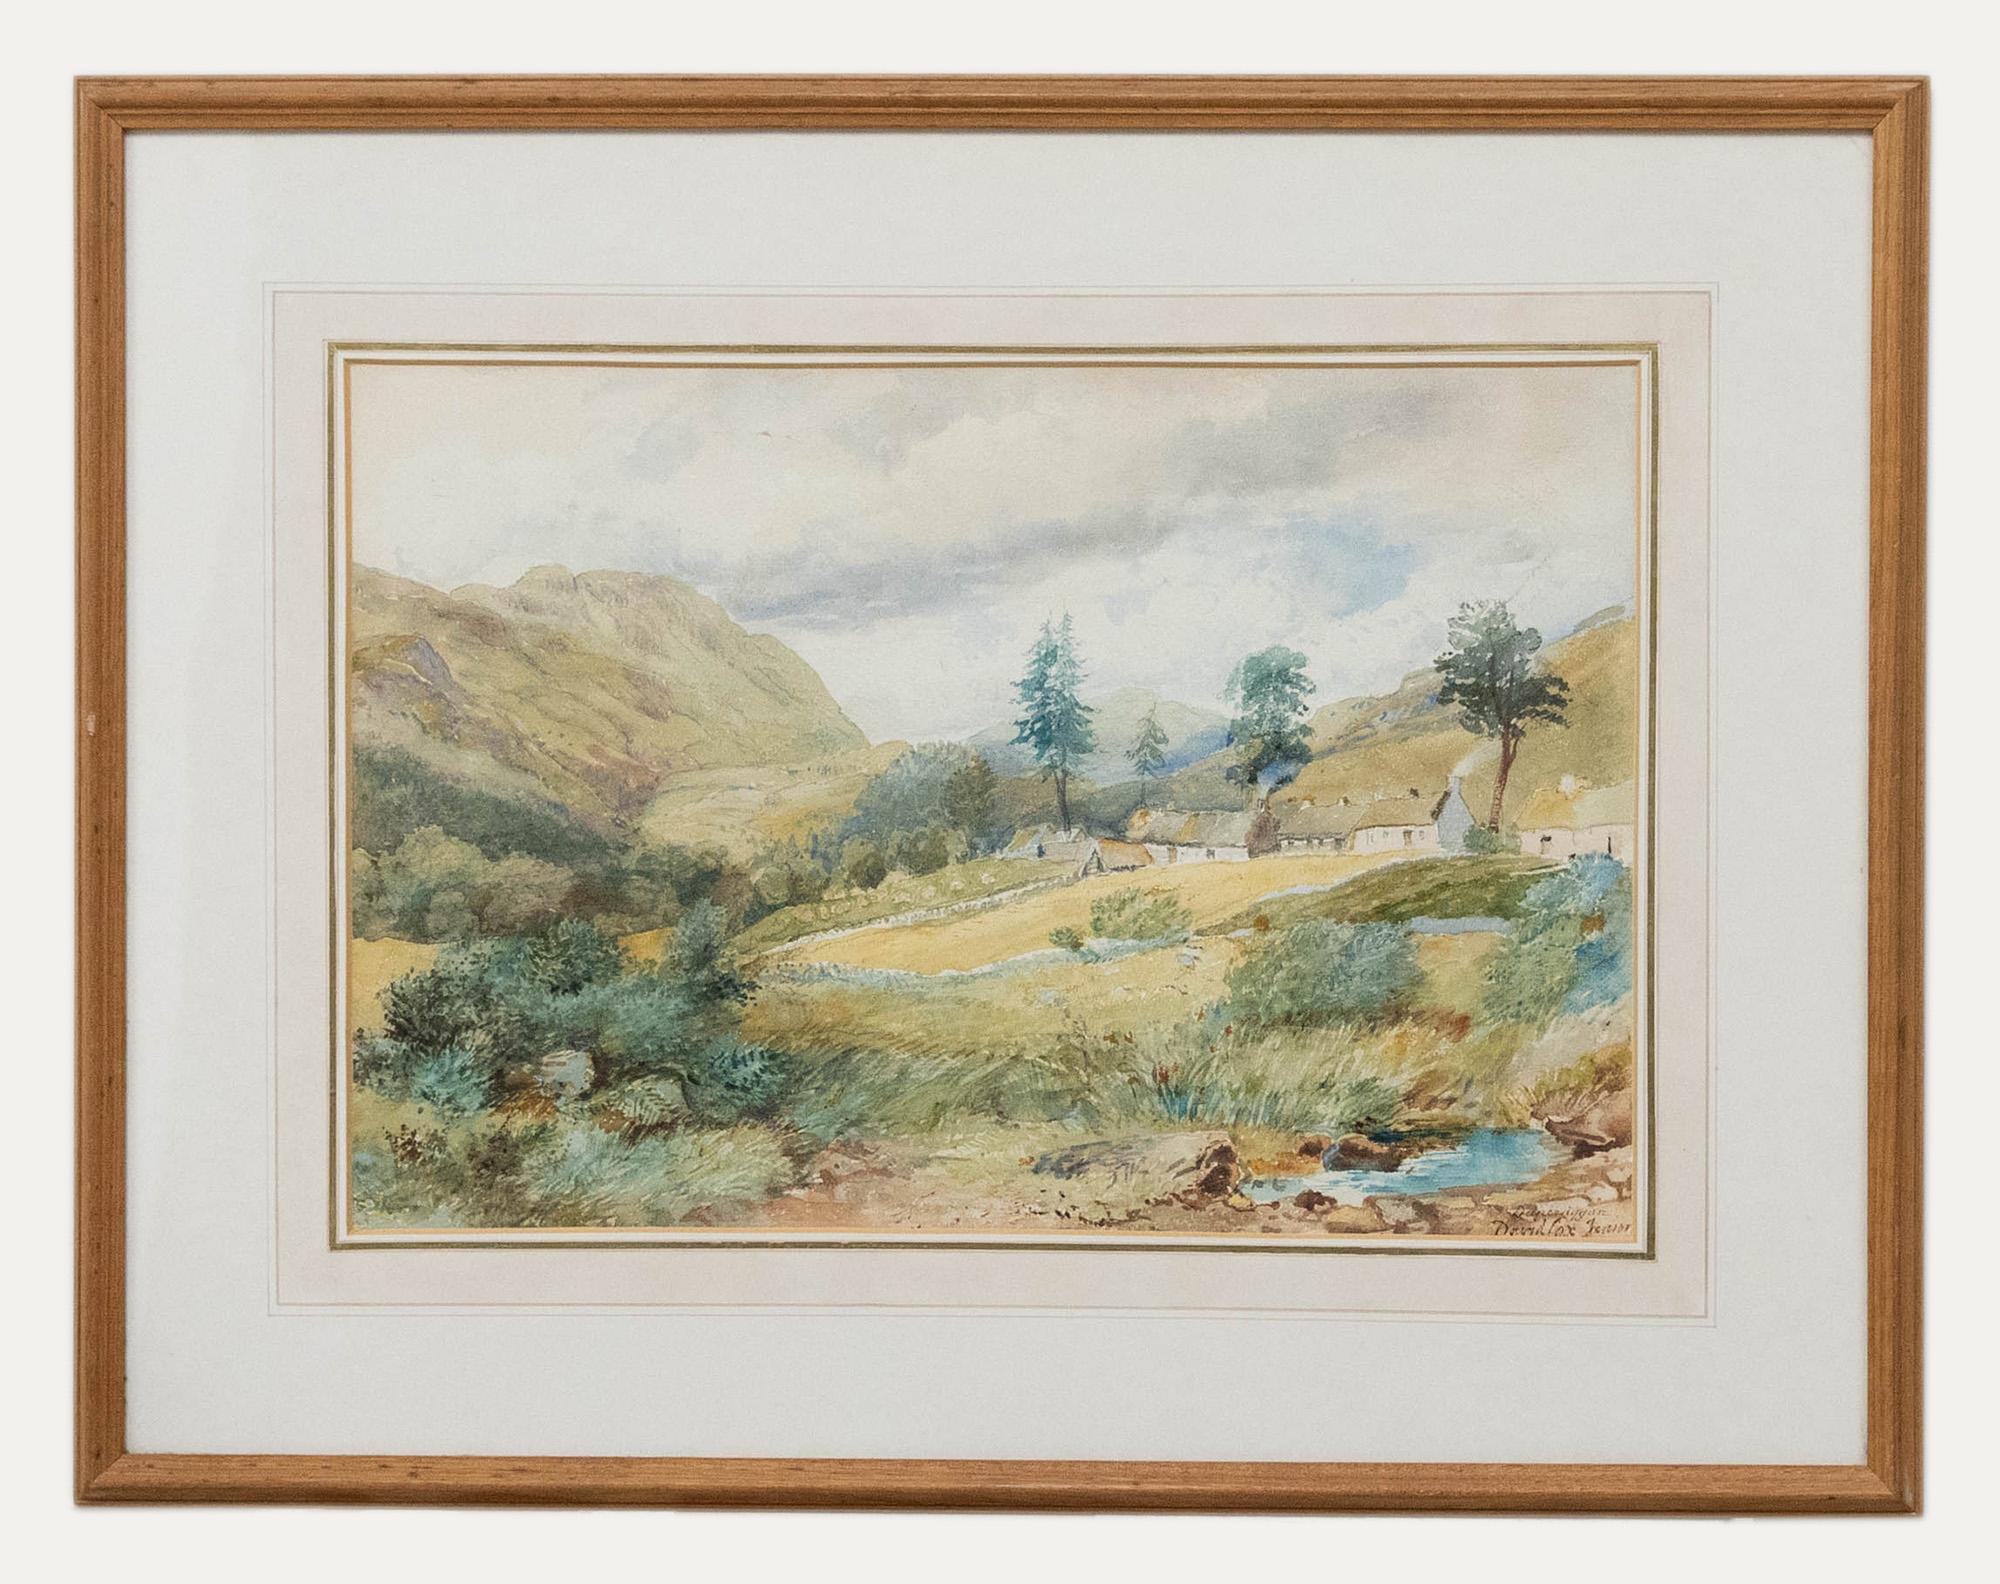 David Cox Jnr. ARWS (1809-1885)- Original-Aquarell. Berglandschaft mit Hütten. Signiert und beschriftet unten rechts. Präsentiert in einem glasierten Eichenrahmen. Auf der Rückseite ist ein Label angebracht. Auf Aquarellpapier.
